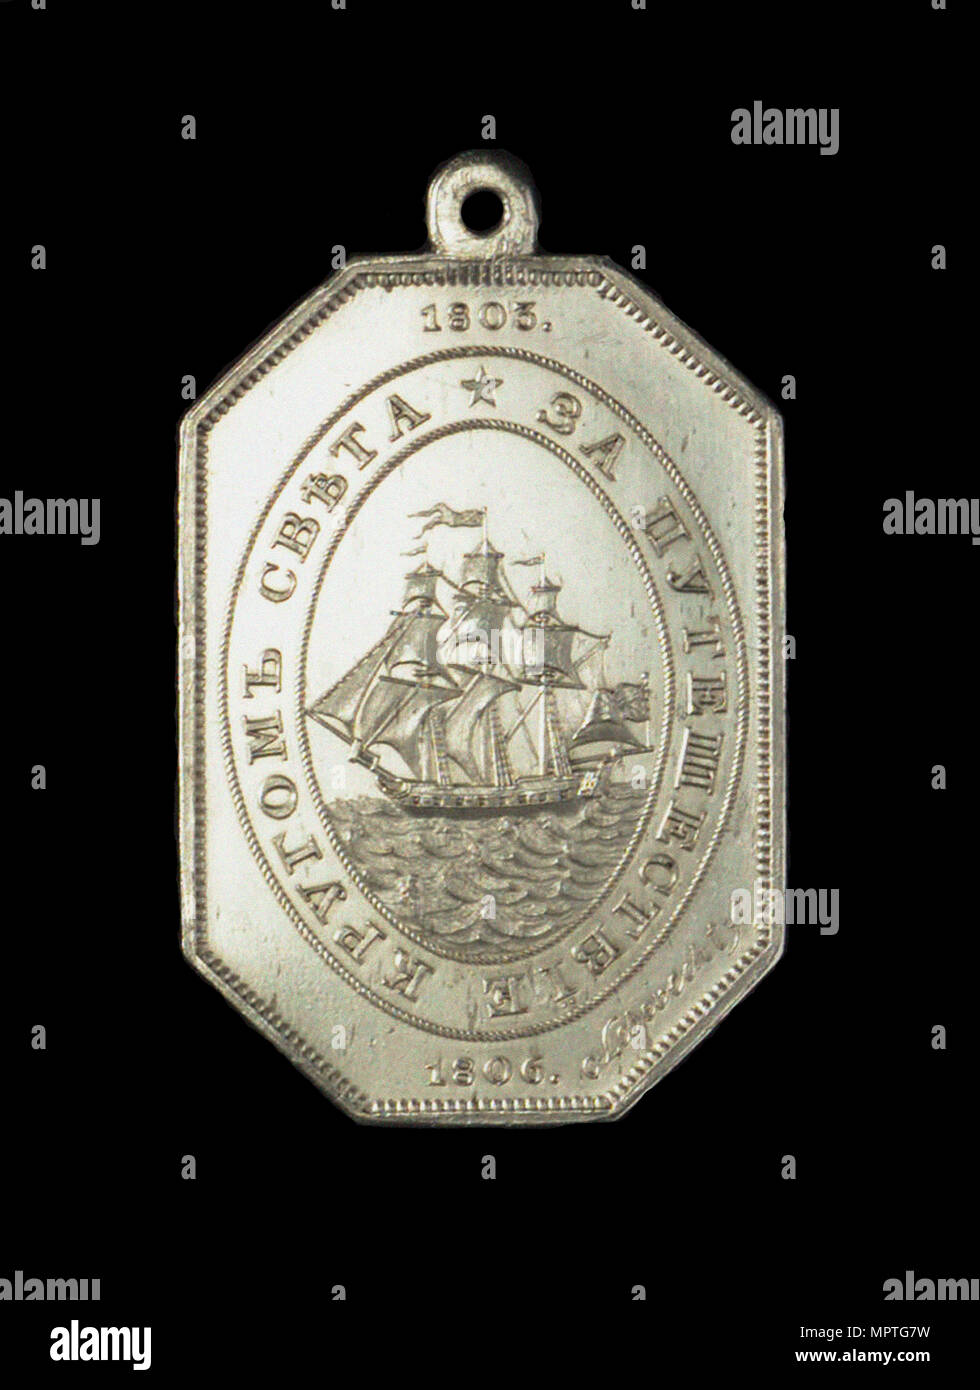 Recompensa Naval medalla conmemorativa del viaje del Nadezhda, 1806. Foto de stock